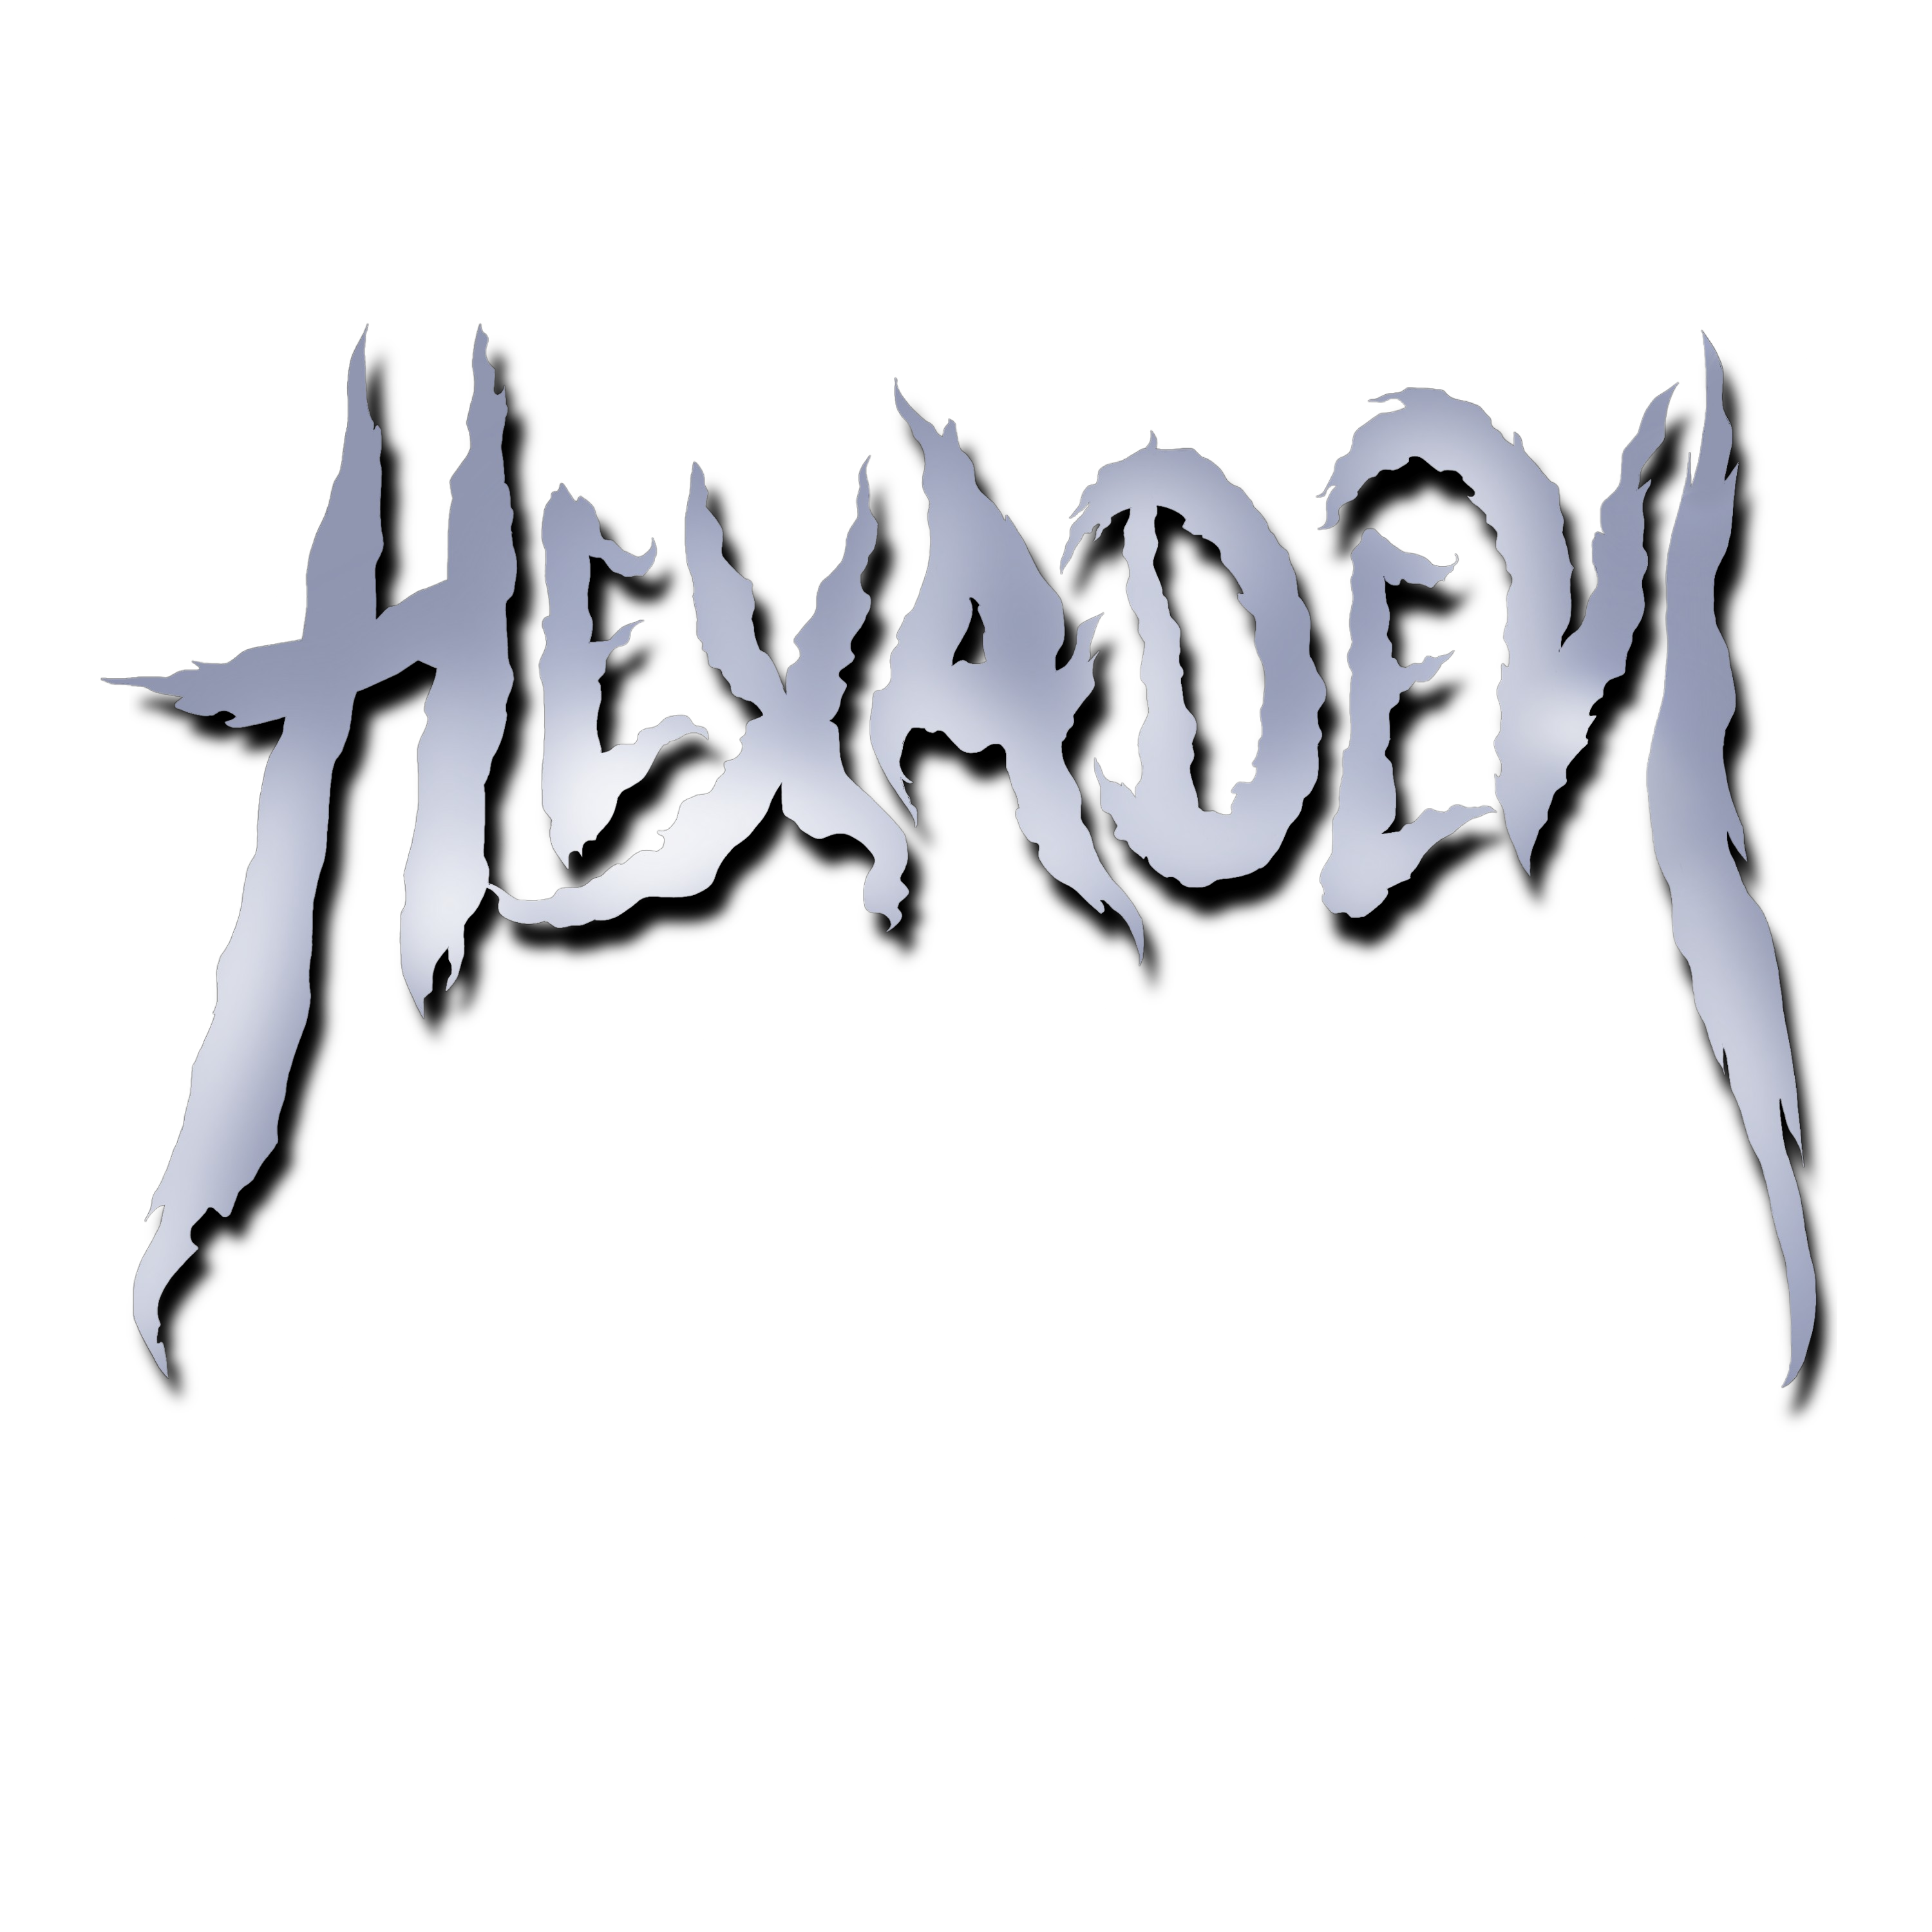 Hexadevi